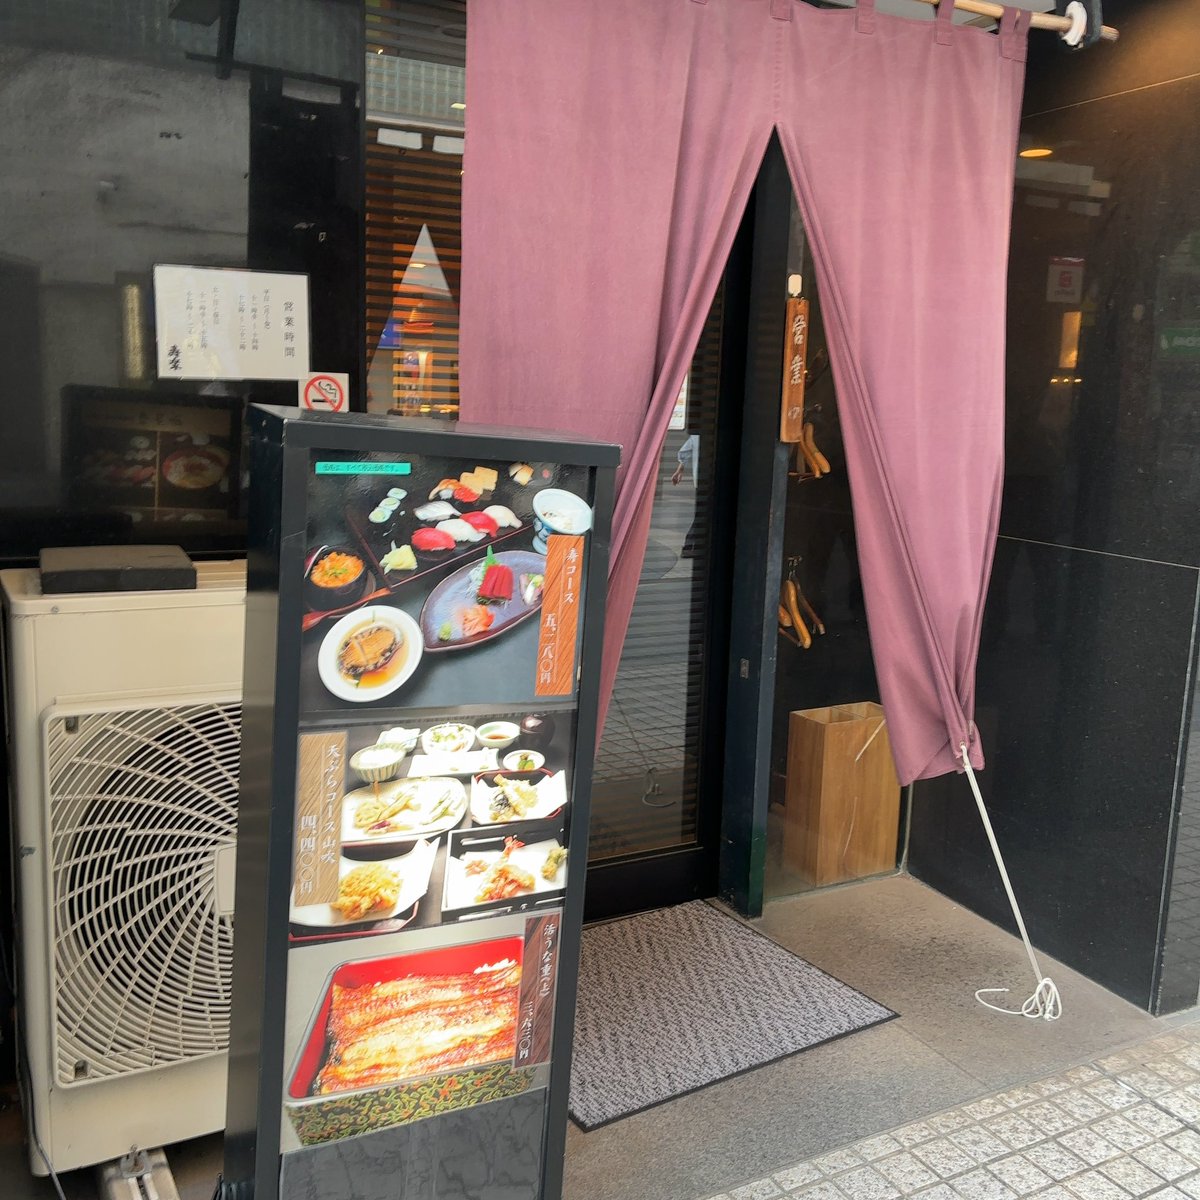 今日の夕食は鶴見区に店舗を構える
天ぷらに和食（鰻）に鮨🍣の
お店（寿楽）さんに
再訪問です。
本日の注文は天ぷらにて🍤
今回は1番安い天ぷらコースの
「山吹」4300円を注文です。
後はアラカルトで色々と・・・
矢張り揚げたては最高に美味しくて
特に山菜が美味くて大満足です。
😋😋😋✨